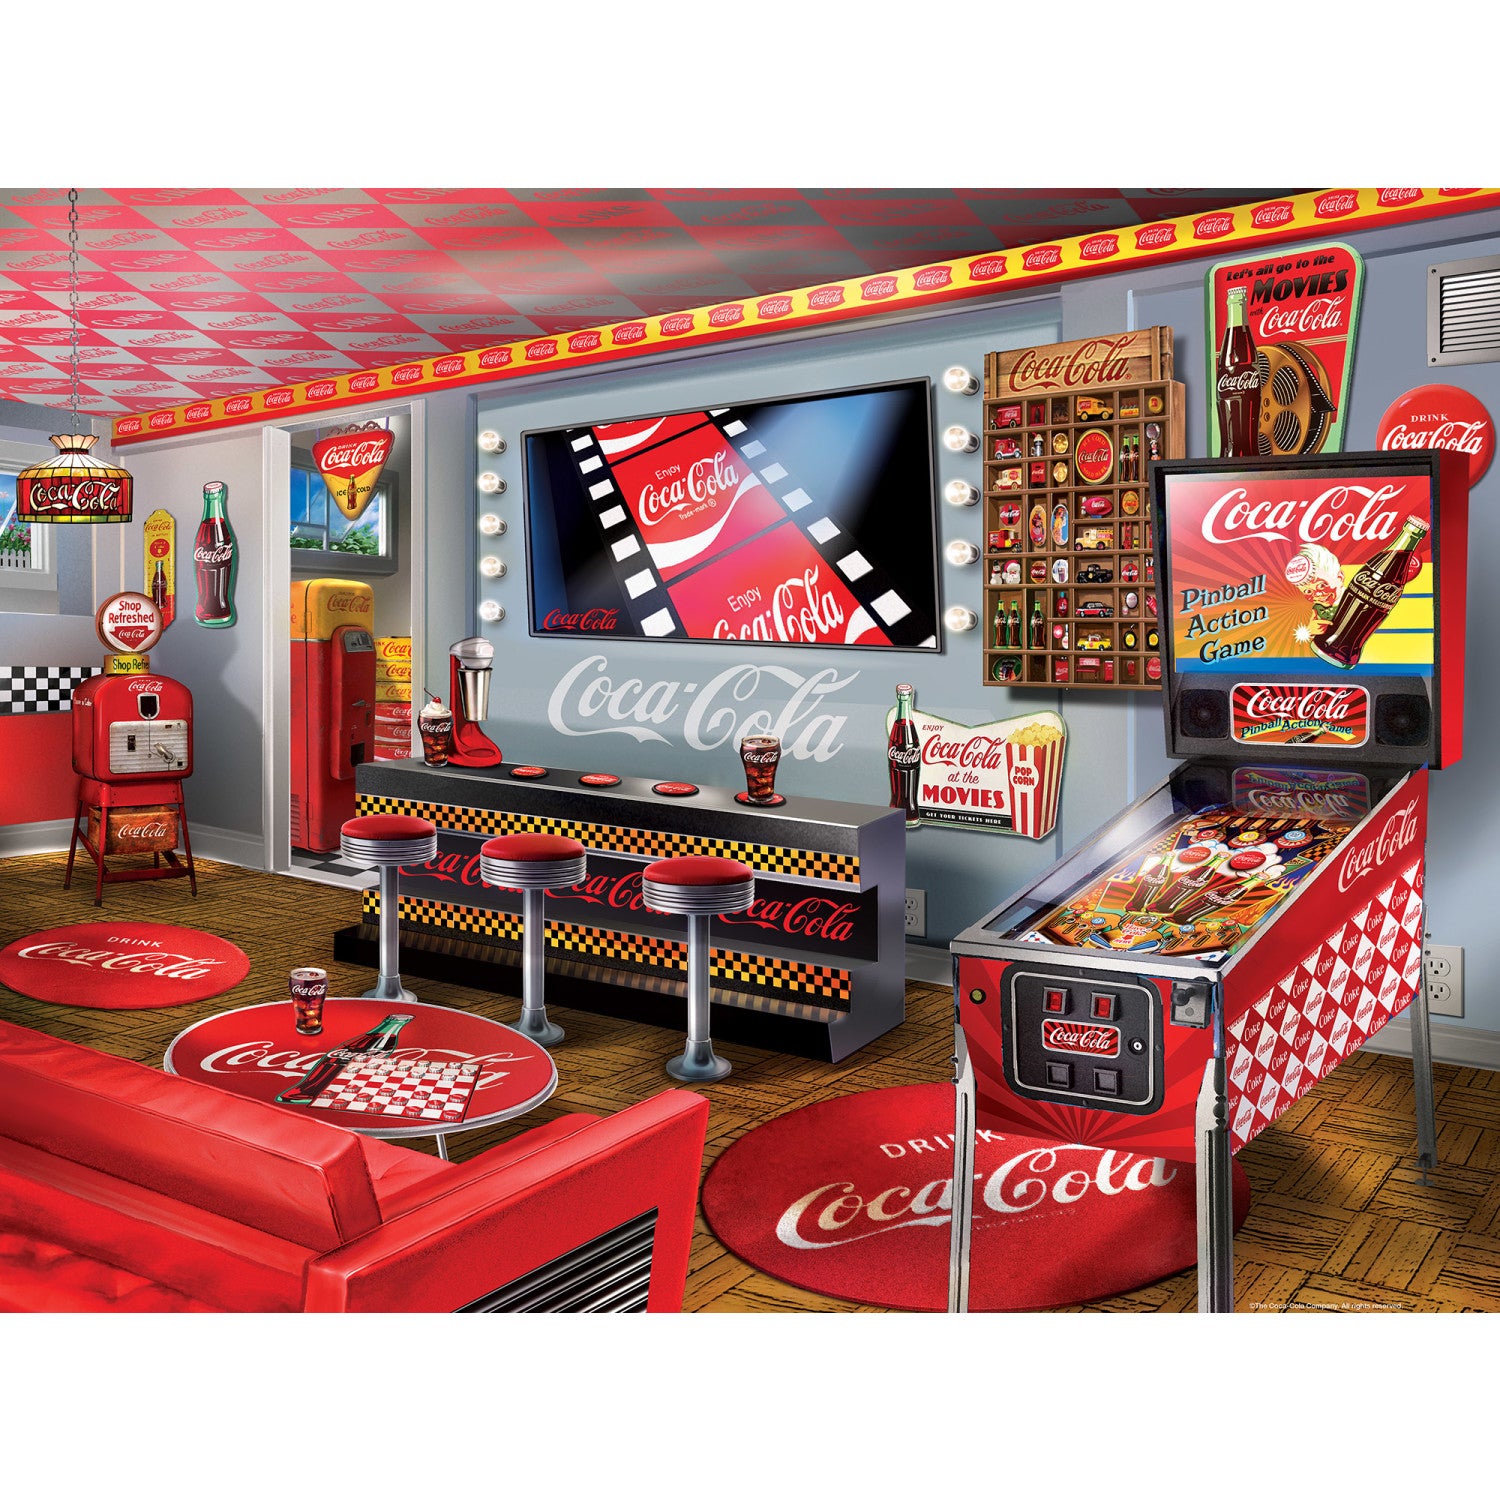 Coca-Cola - Collector's Hideaway 300 Piece Puzzle